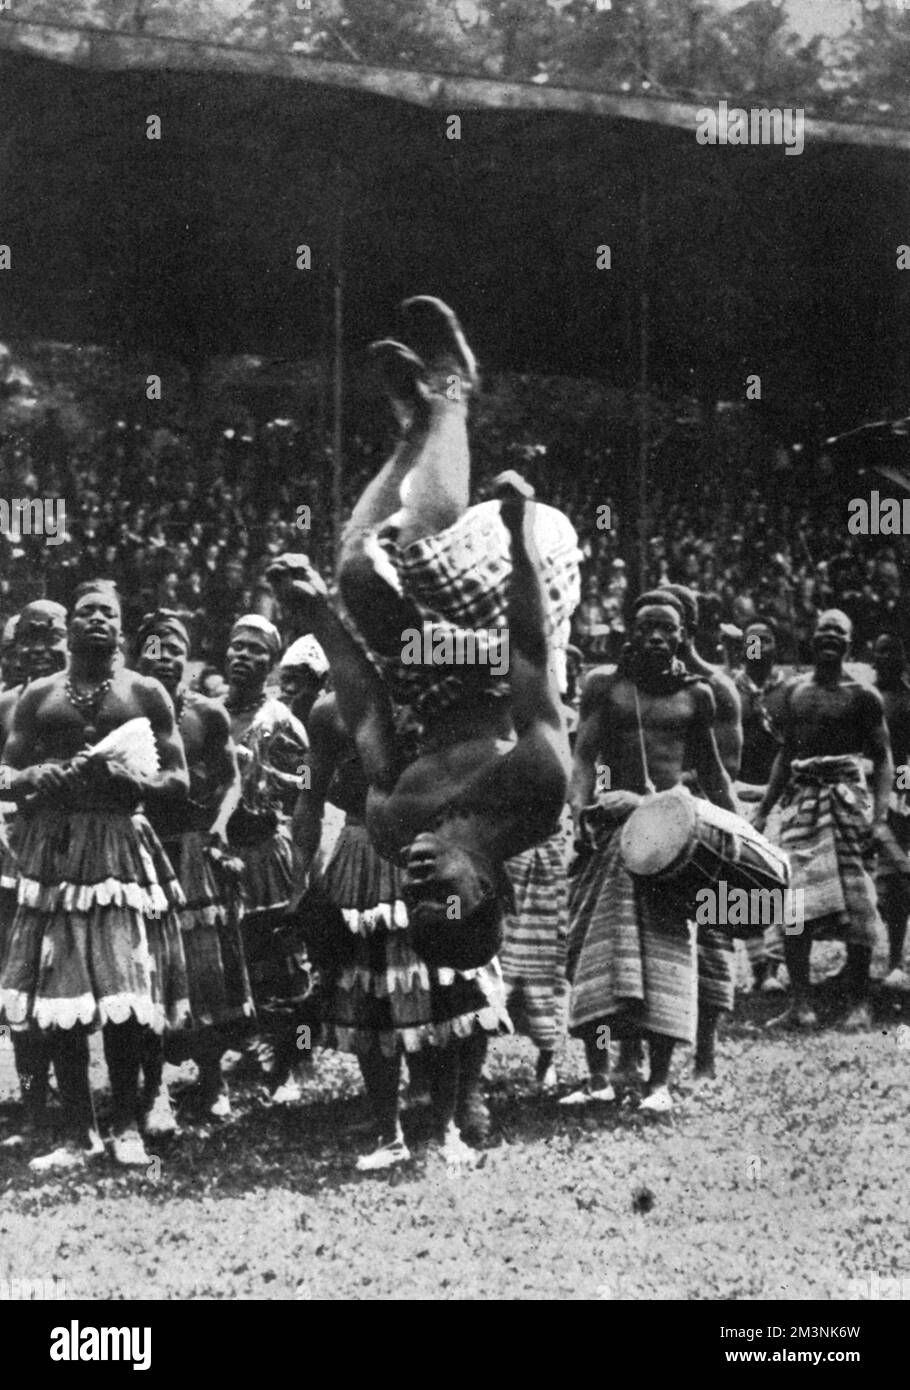 Eine Akrobatenprozession aus Dahomey (jetzt Republik Benin) auf der Ausstellung Coloniale (Kolonialausstellung), die von Mai bis Oktober 1931 in Paris stattfindet. Ziel der Ausstellung war es, die vielfältigen Völker und Kulturen der französischen Kolonialbesitzer zu zeigen. Datum: 1931 Stockfoto